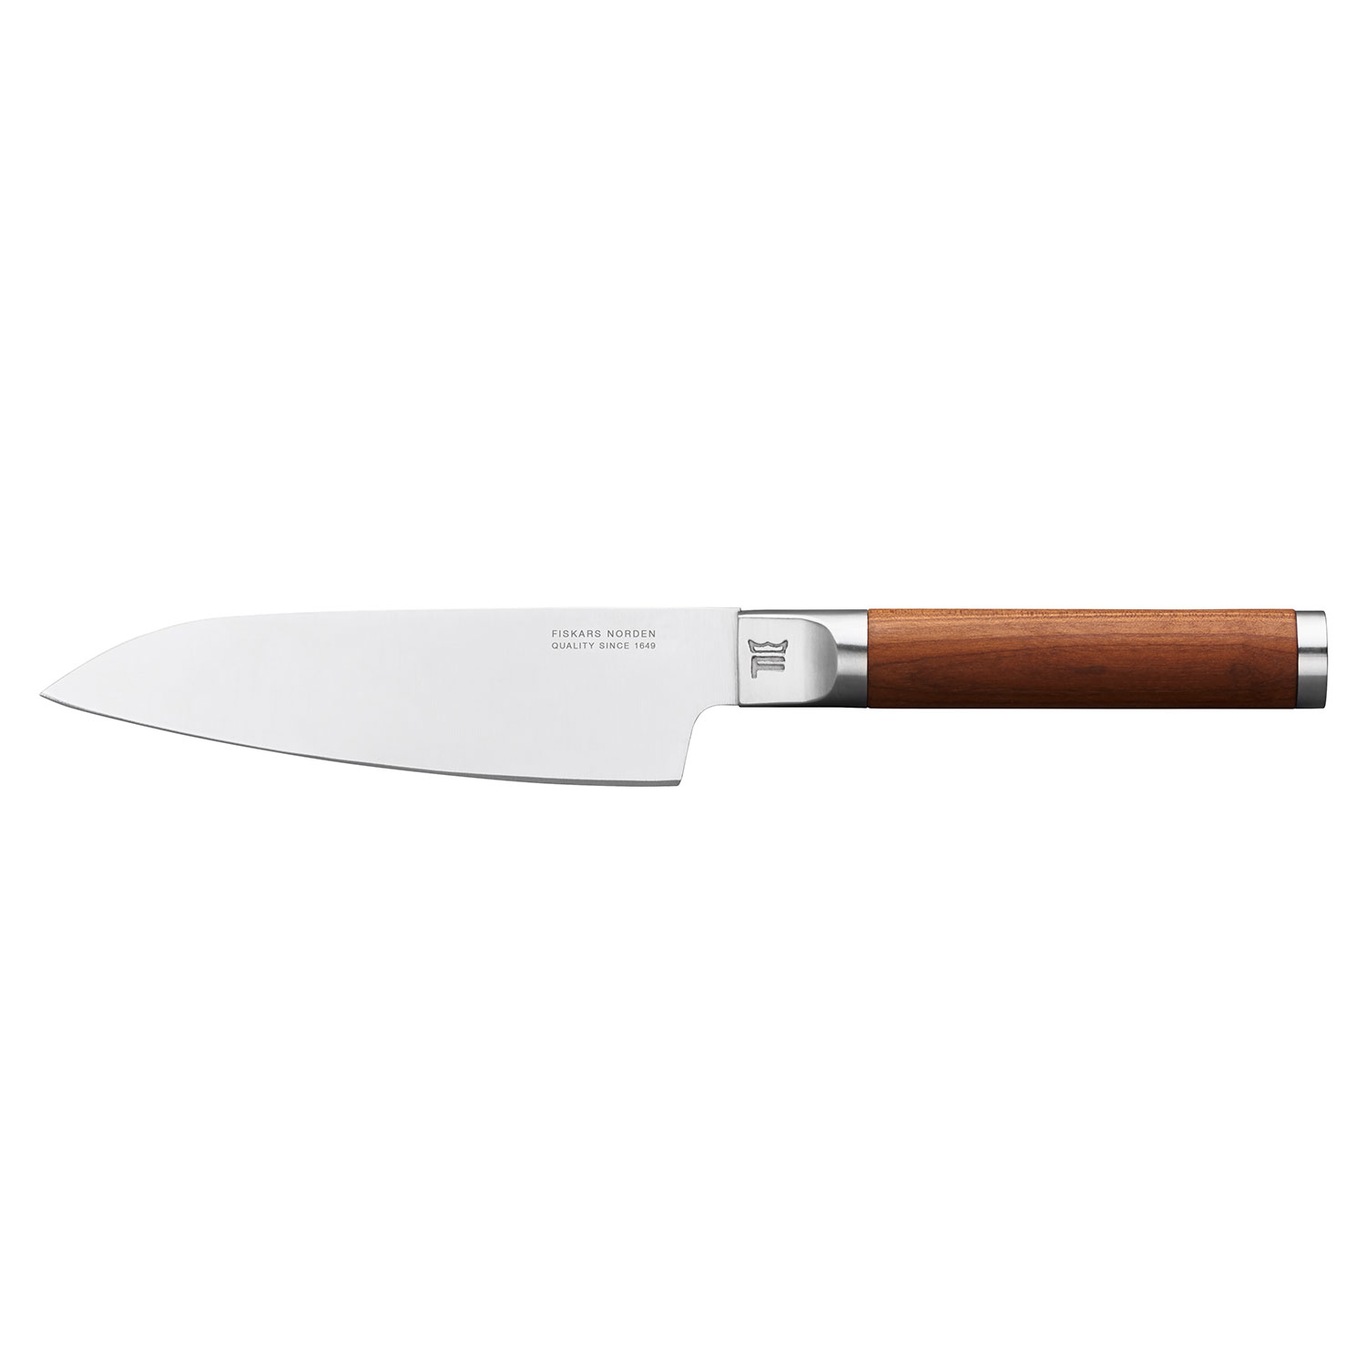 Norden Chef's Knife, 12 cm